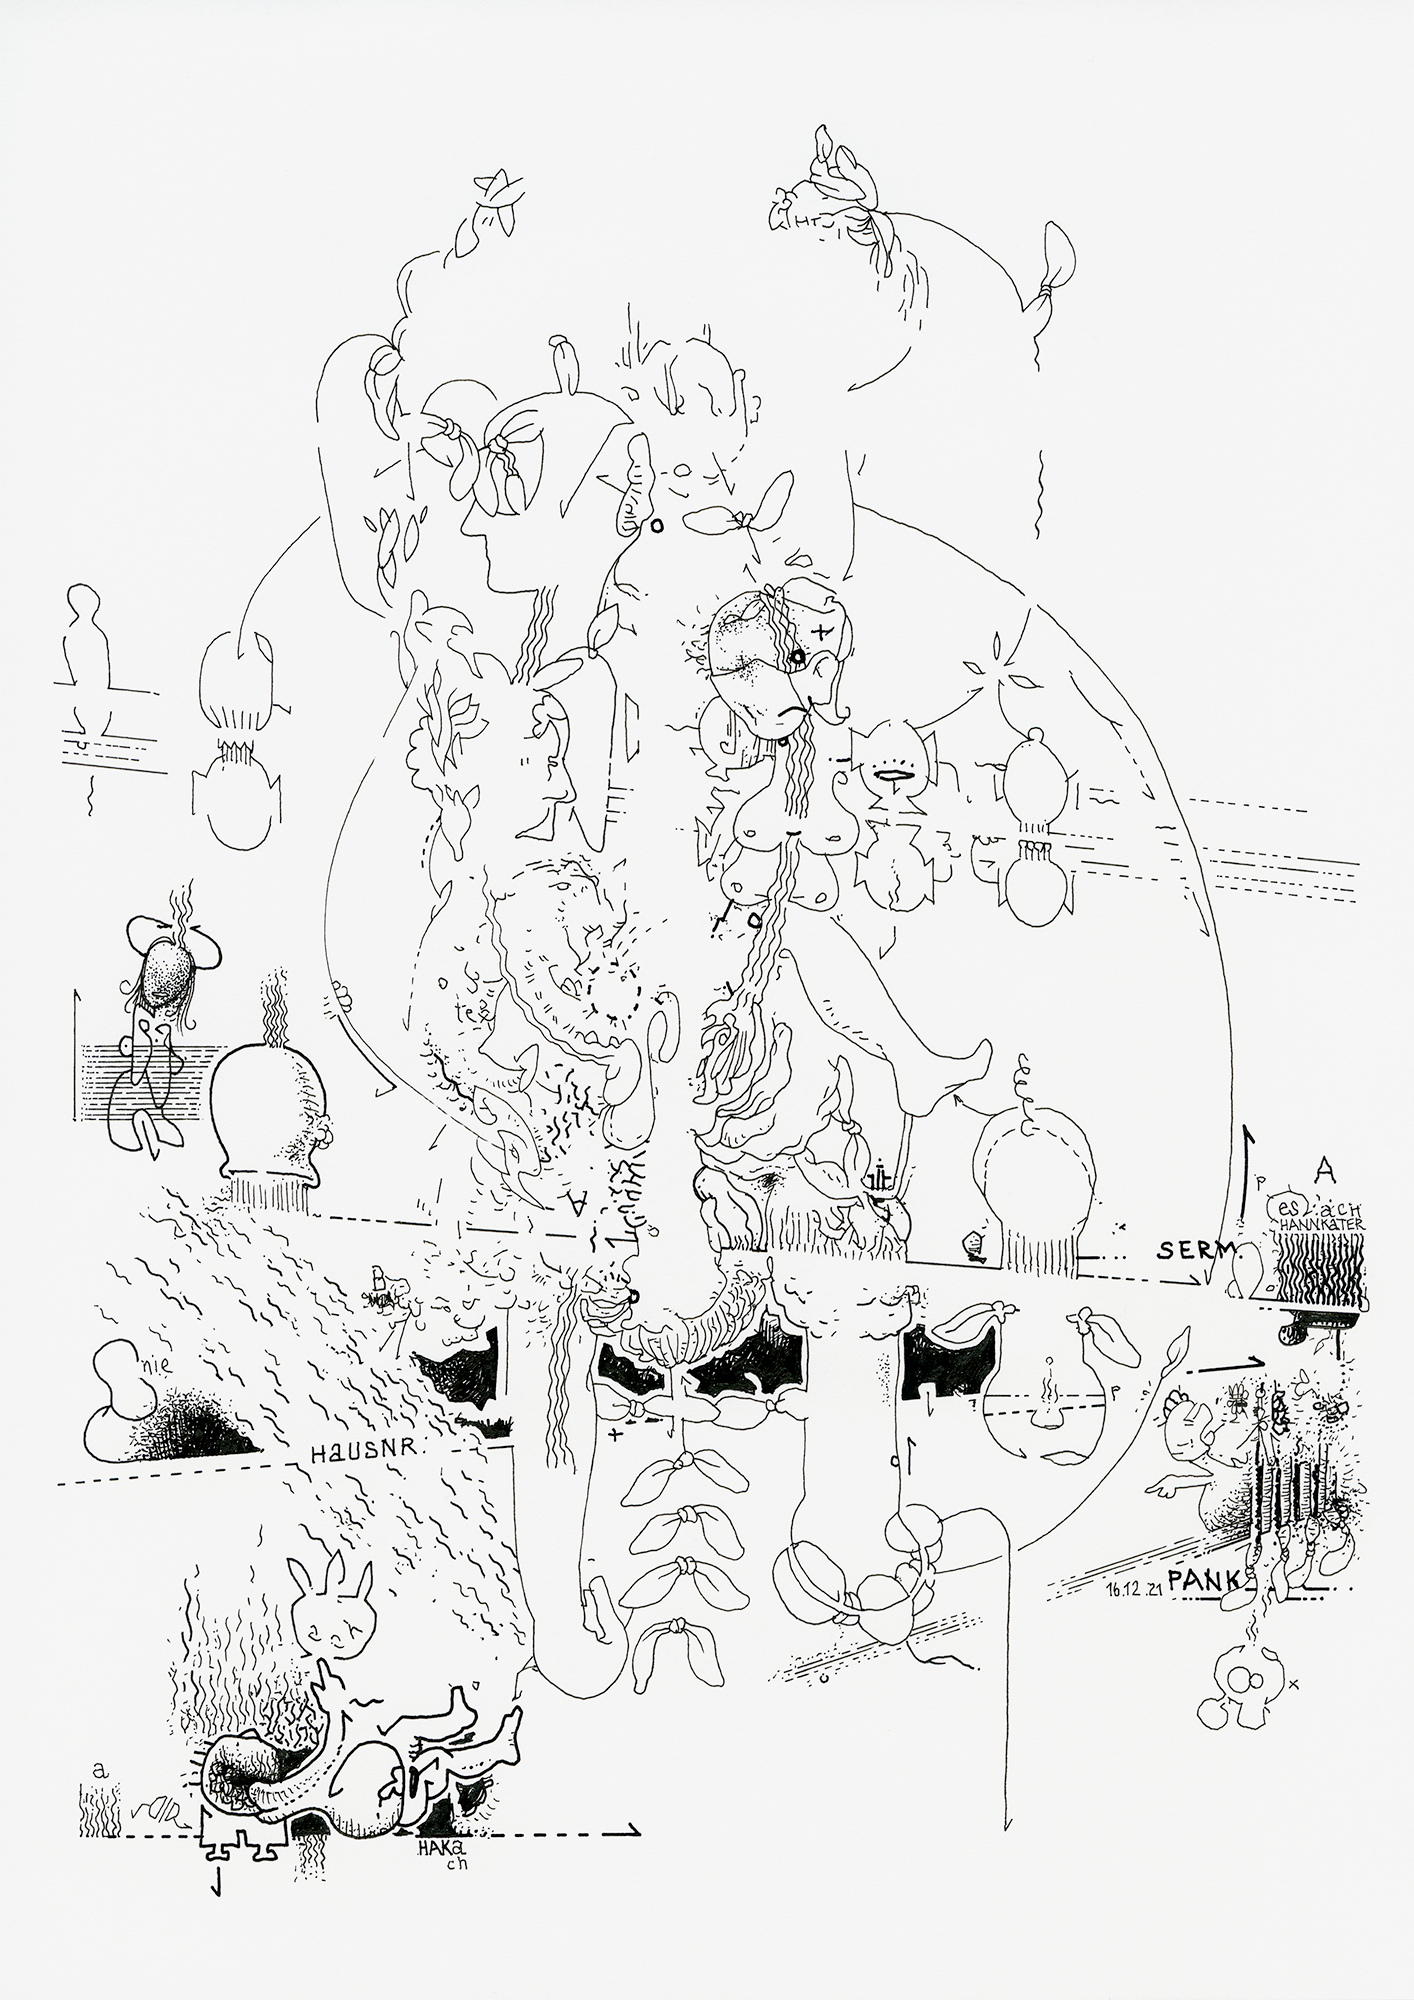 Hannes Kater: Tageszeichnung (Zeichnung/drawing) vom 16.12.2021 (1414 x 2000 Pixel)